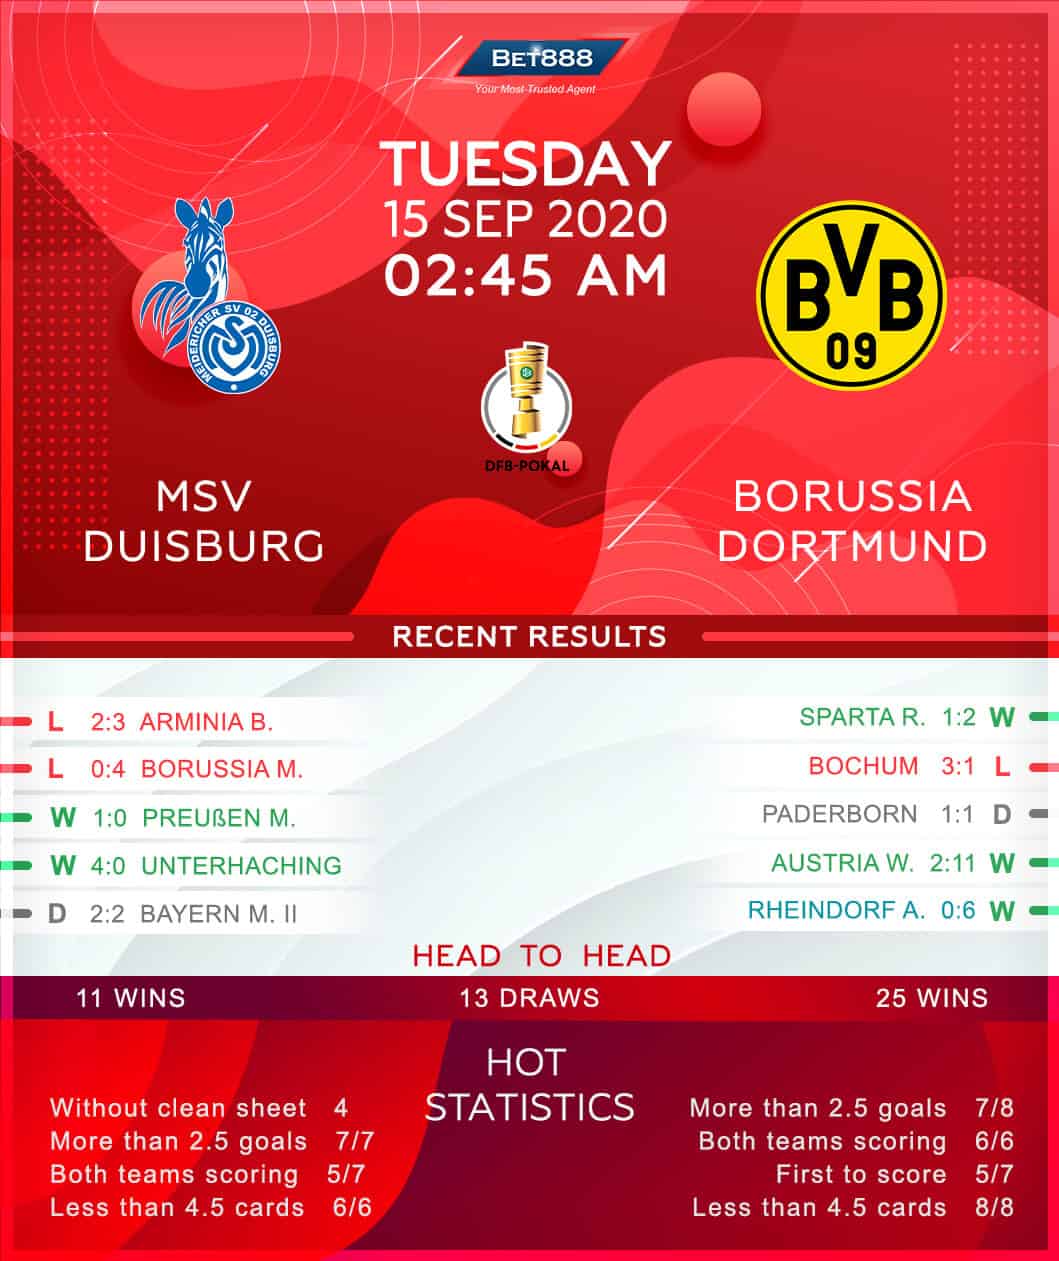 Duisburg vs Borussia Dortmund﻿ 15/09/20